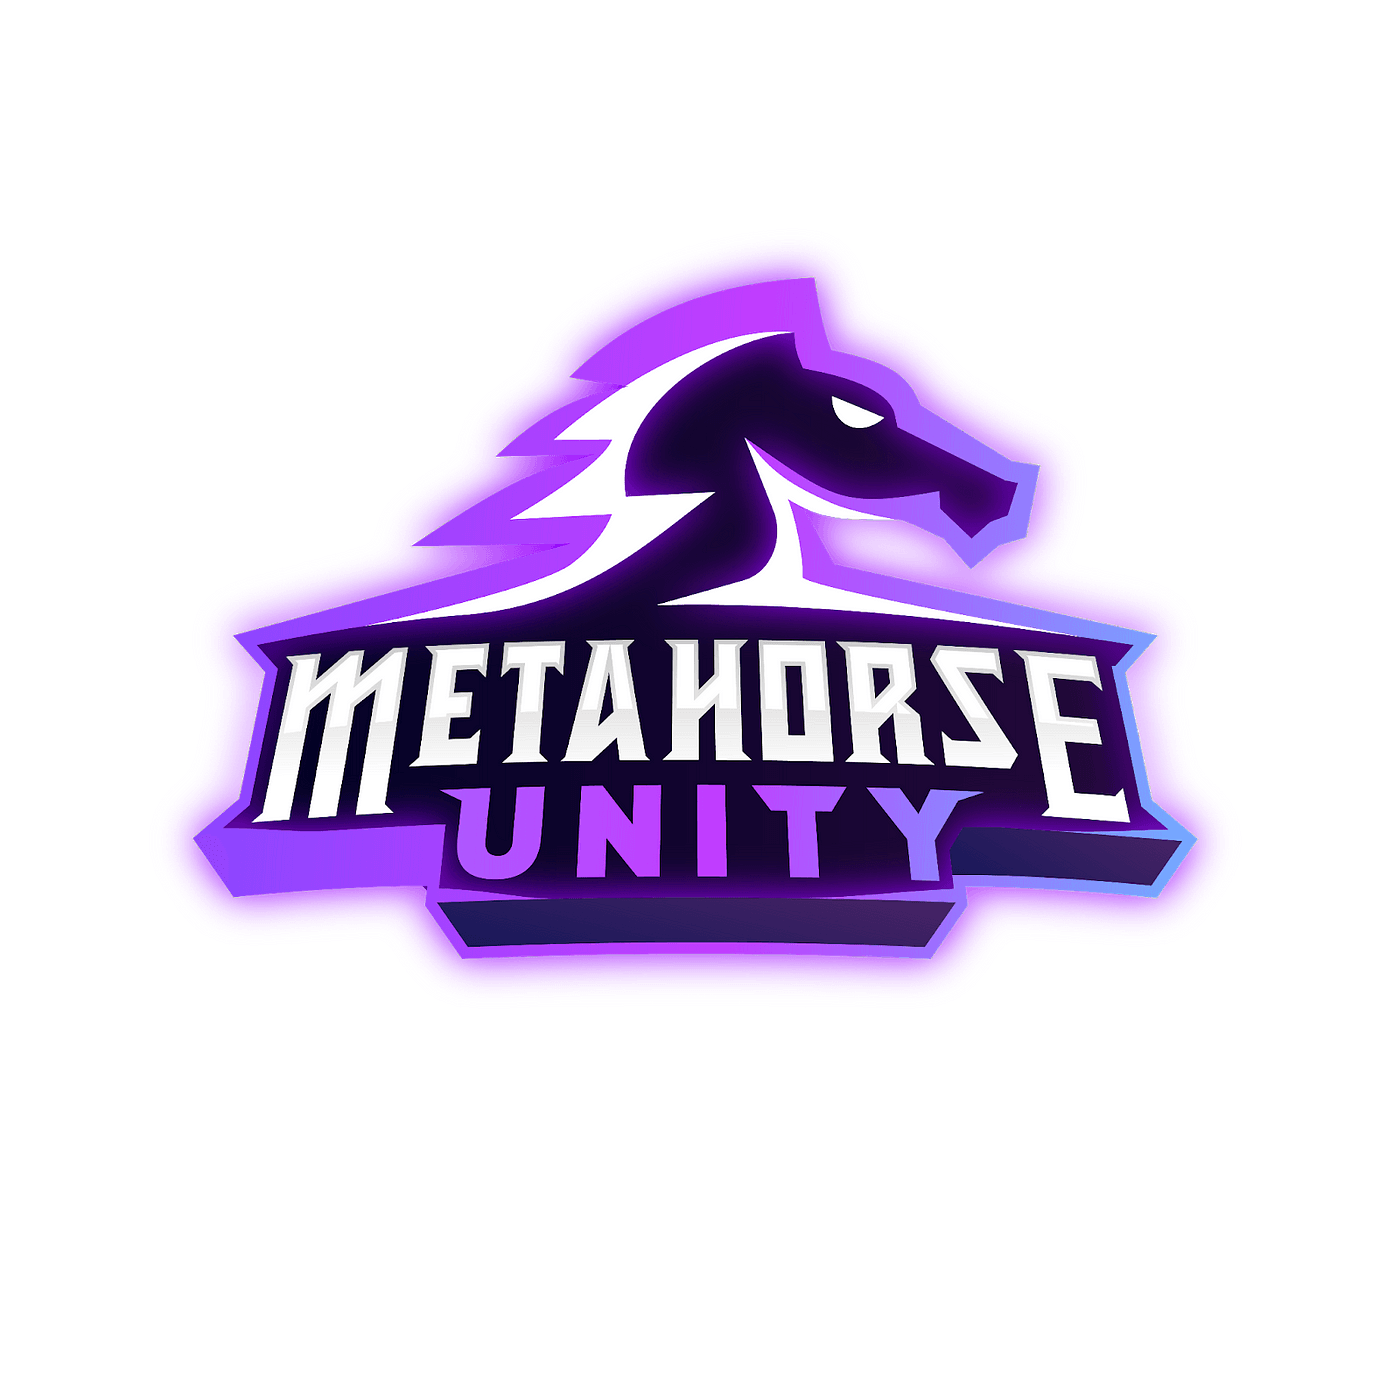 Metahorse logo.png